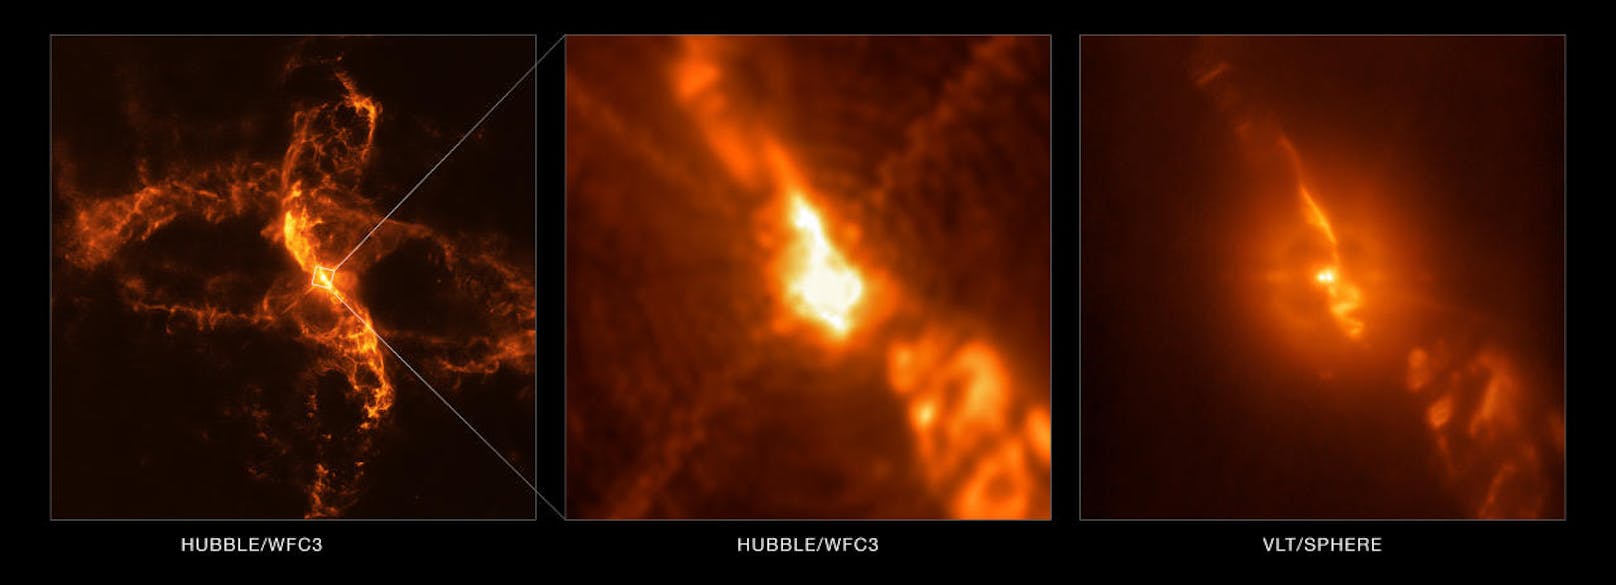 ... Aufnahmen des Hubble-Weltraumteleskops mit denen des eigenen Very Large Telecope (VLT). Im Bild: ein Vergleich der Bildqualität zwischen Hubble und dem VLT im Detailausschnitt.